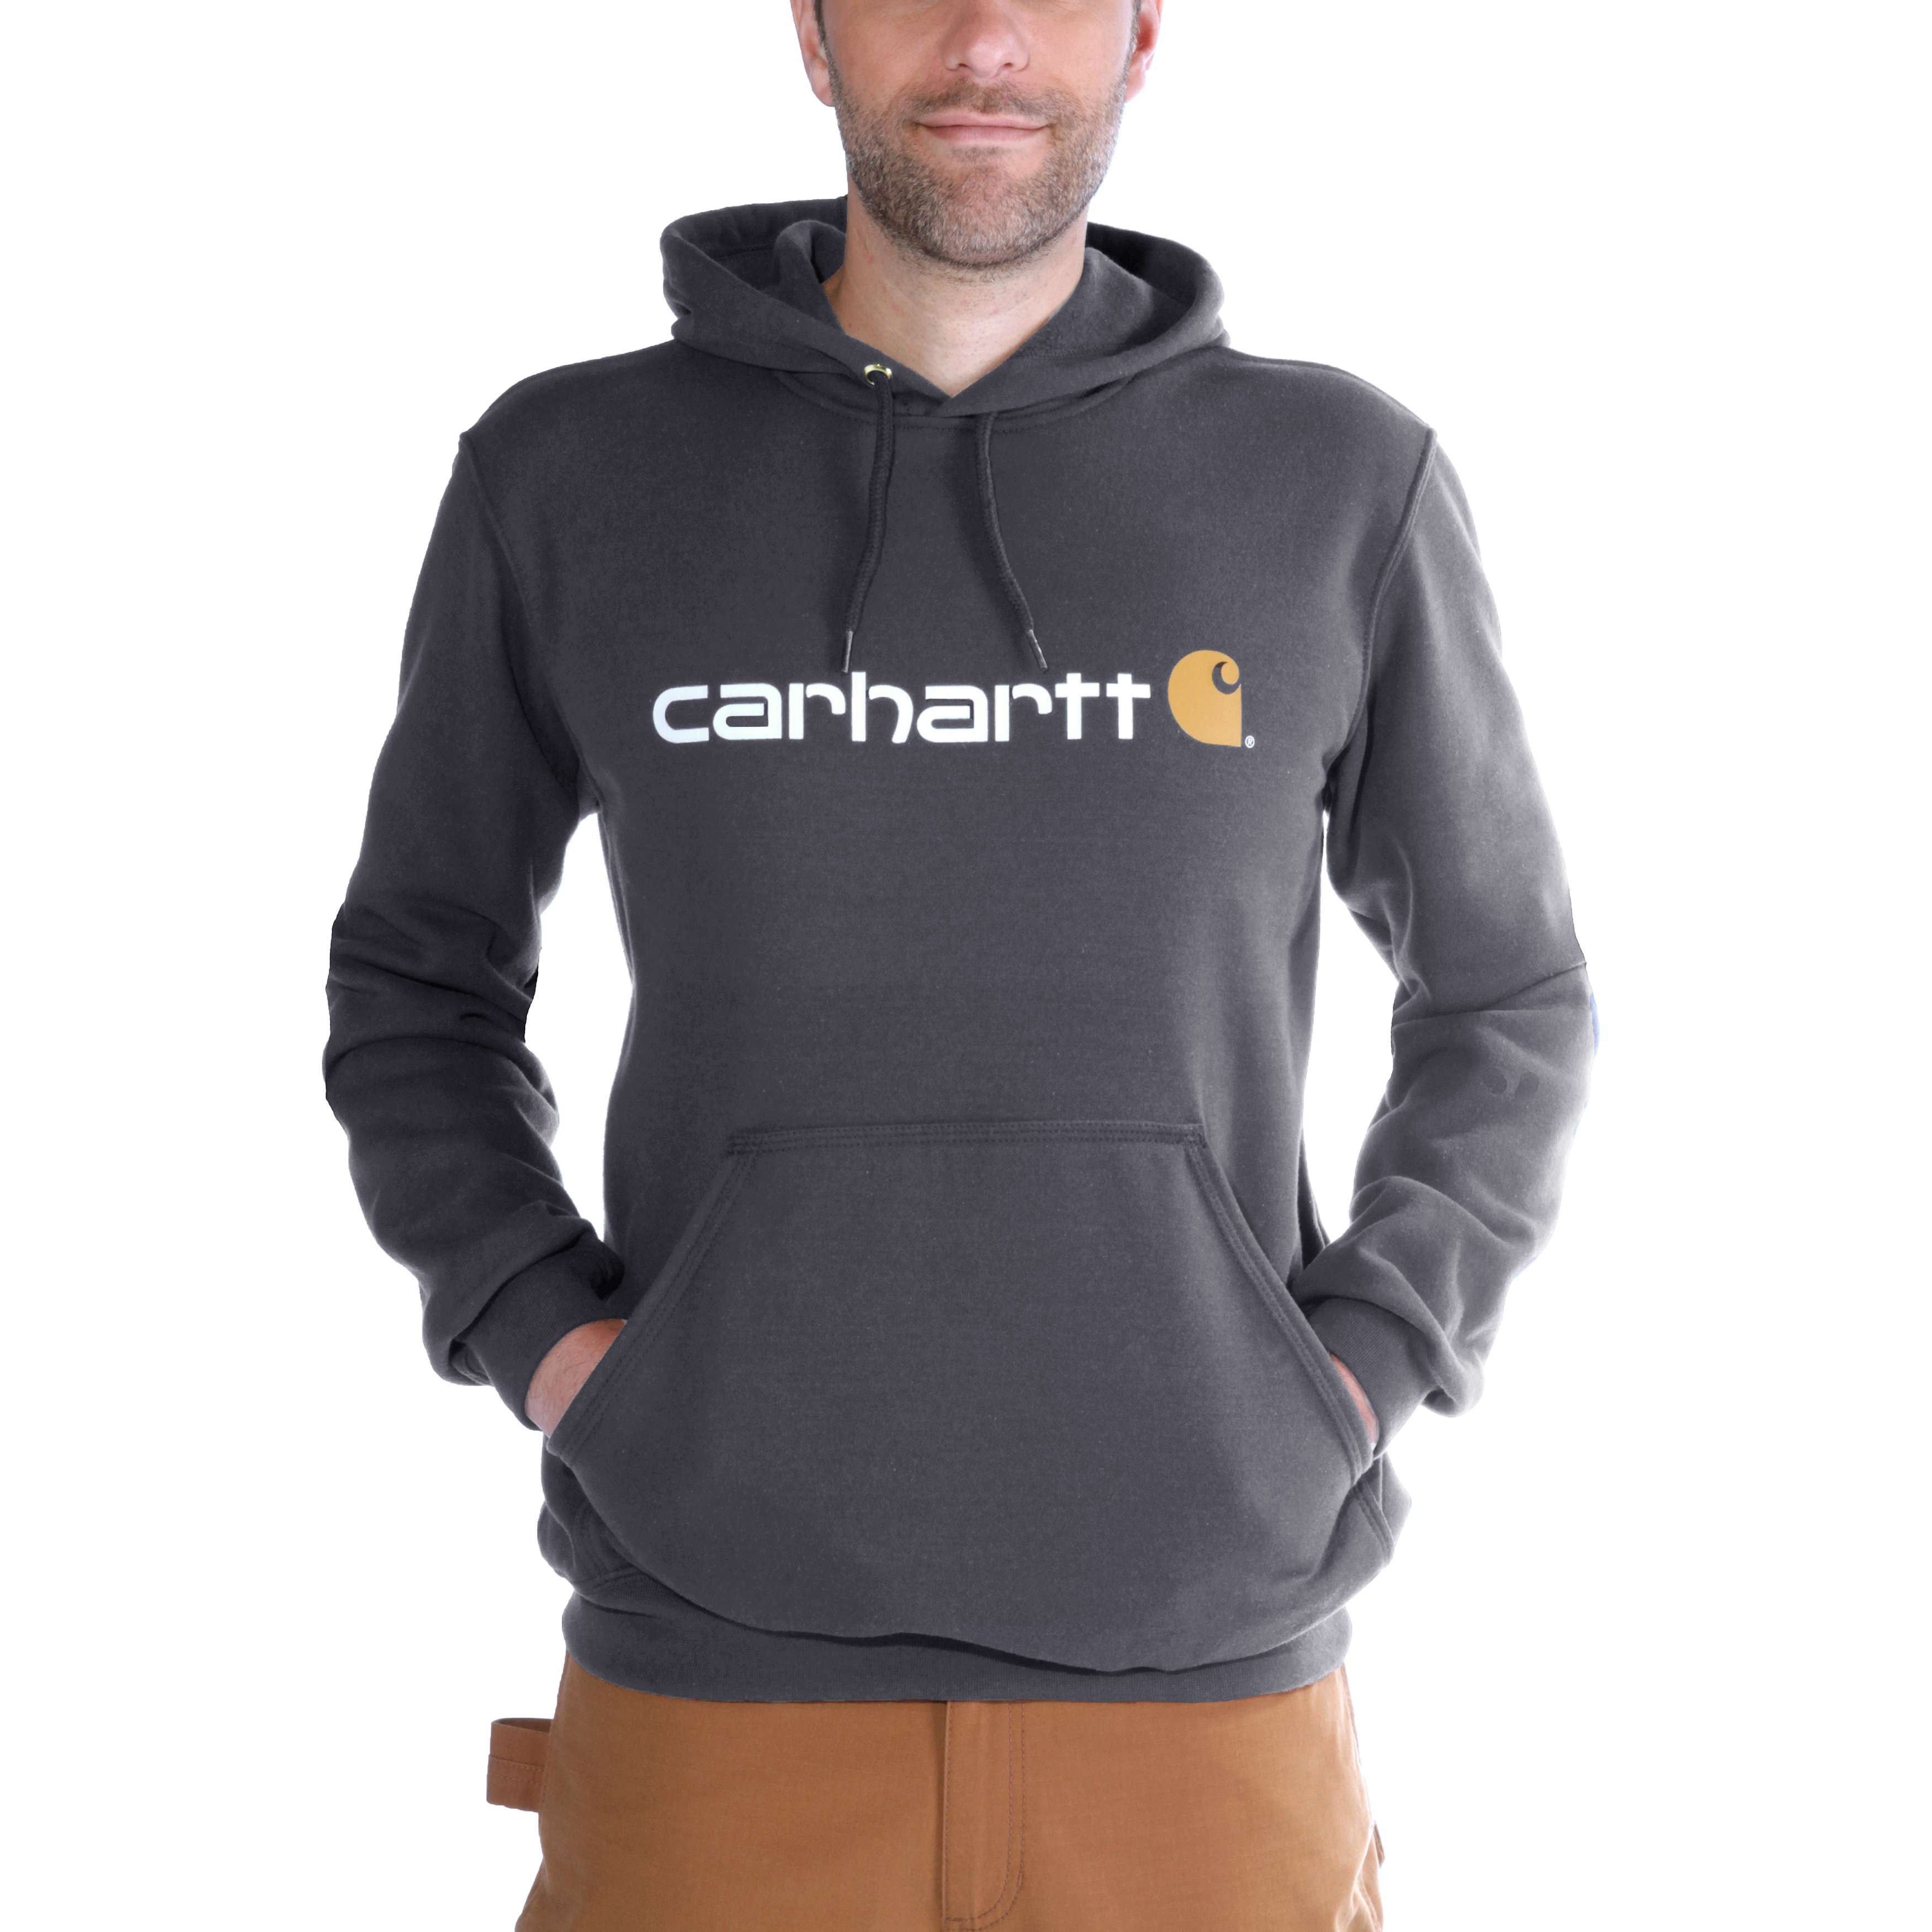 Carhartt Hoodies - Loose fit herensweater met capuchon en carhartt-logo Grijs - XS